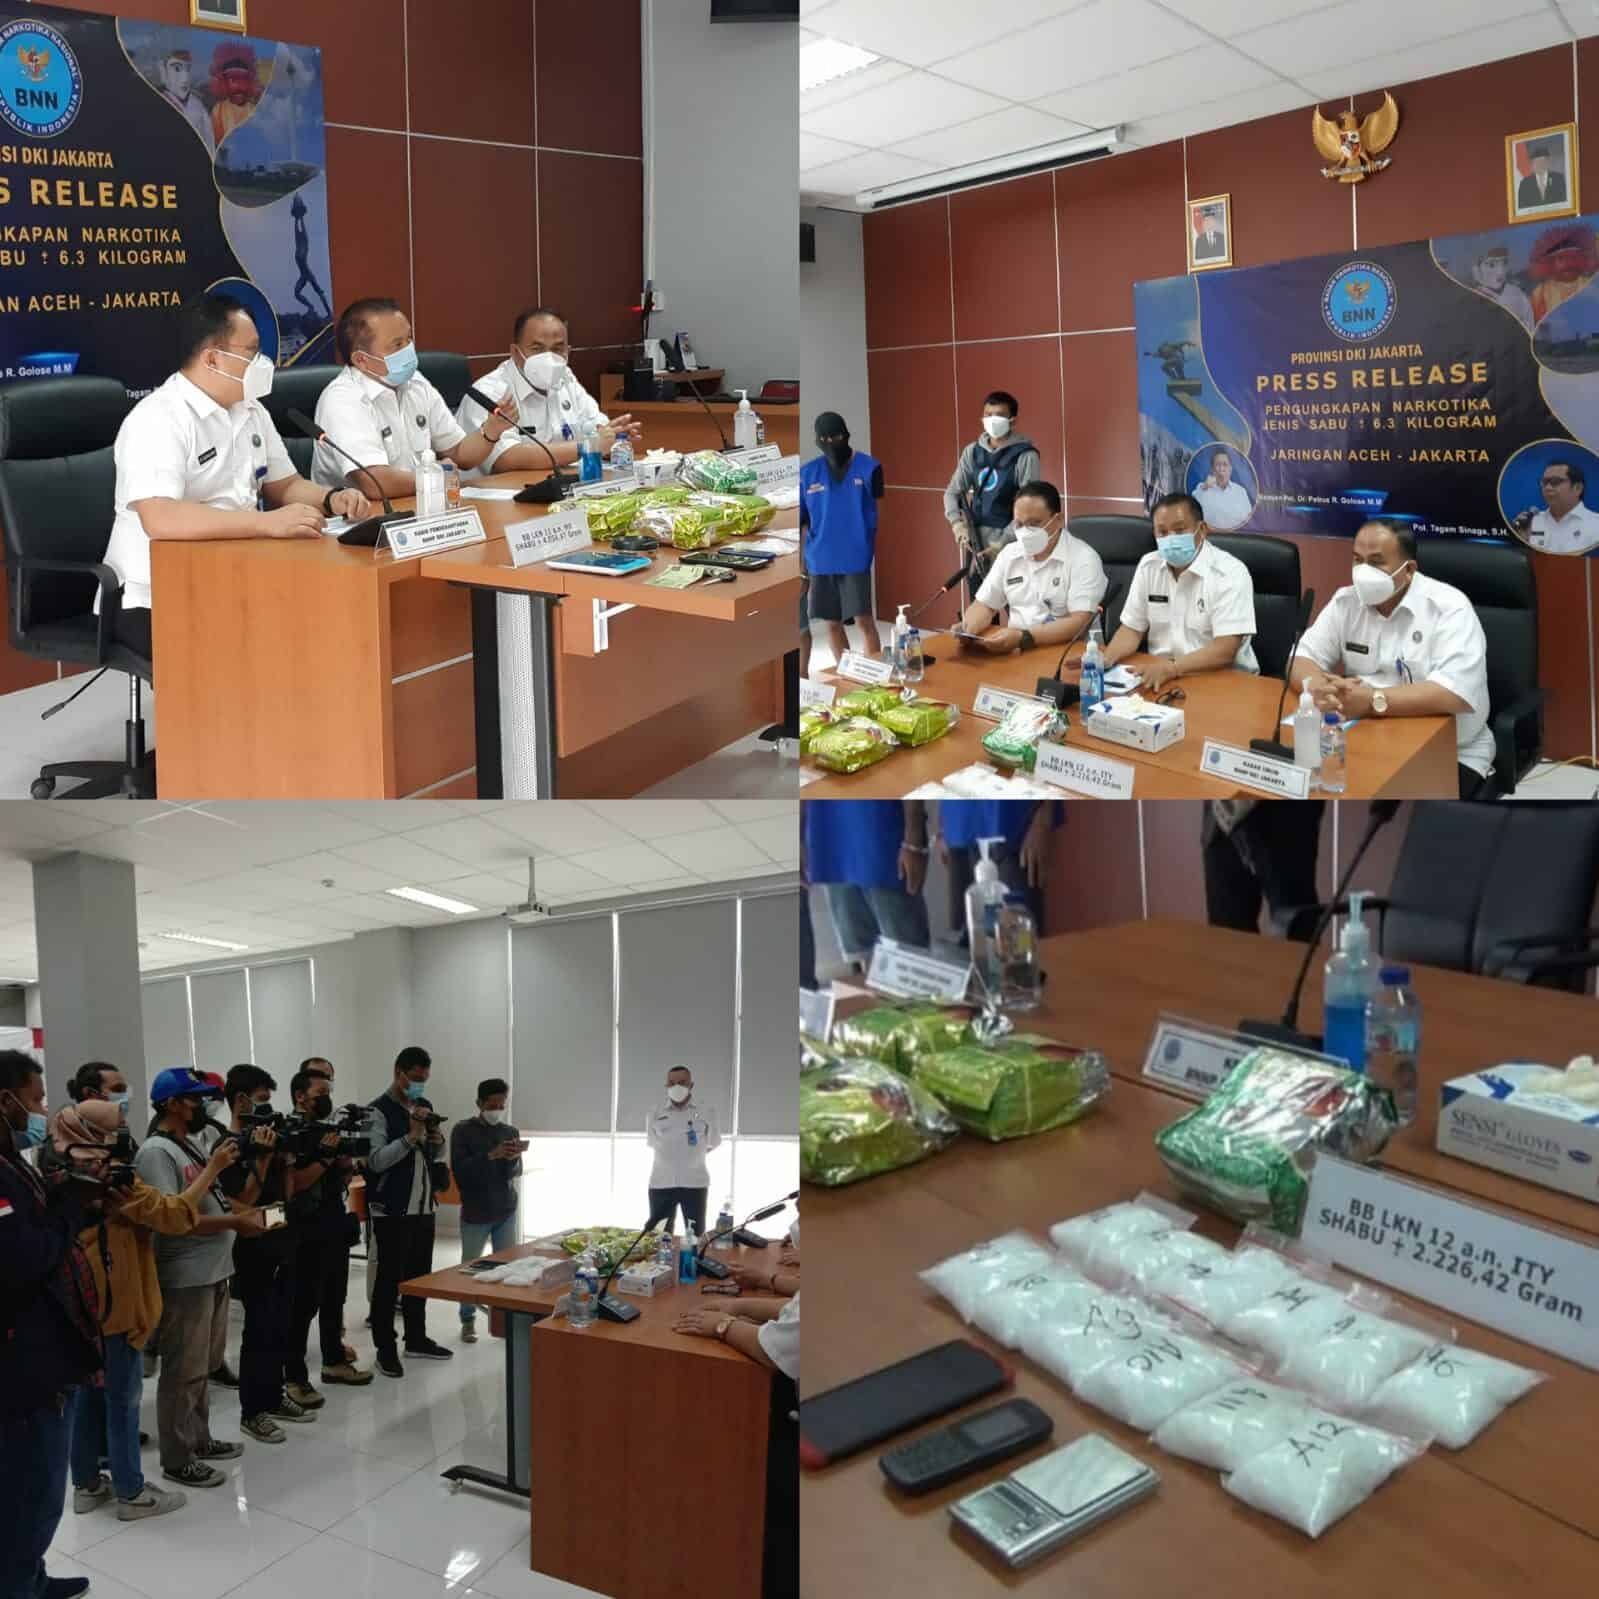 Press Realese Pengungkapan Natkotika Jenis Sabu +- 6,3 Kg Jaringan Aceh – Jakarta Badan Narkotika Nasional Provinsi DKI Jakarta